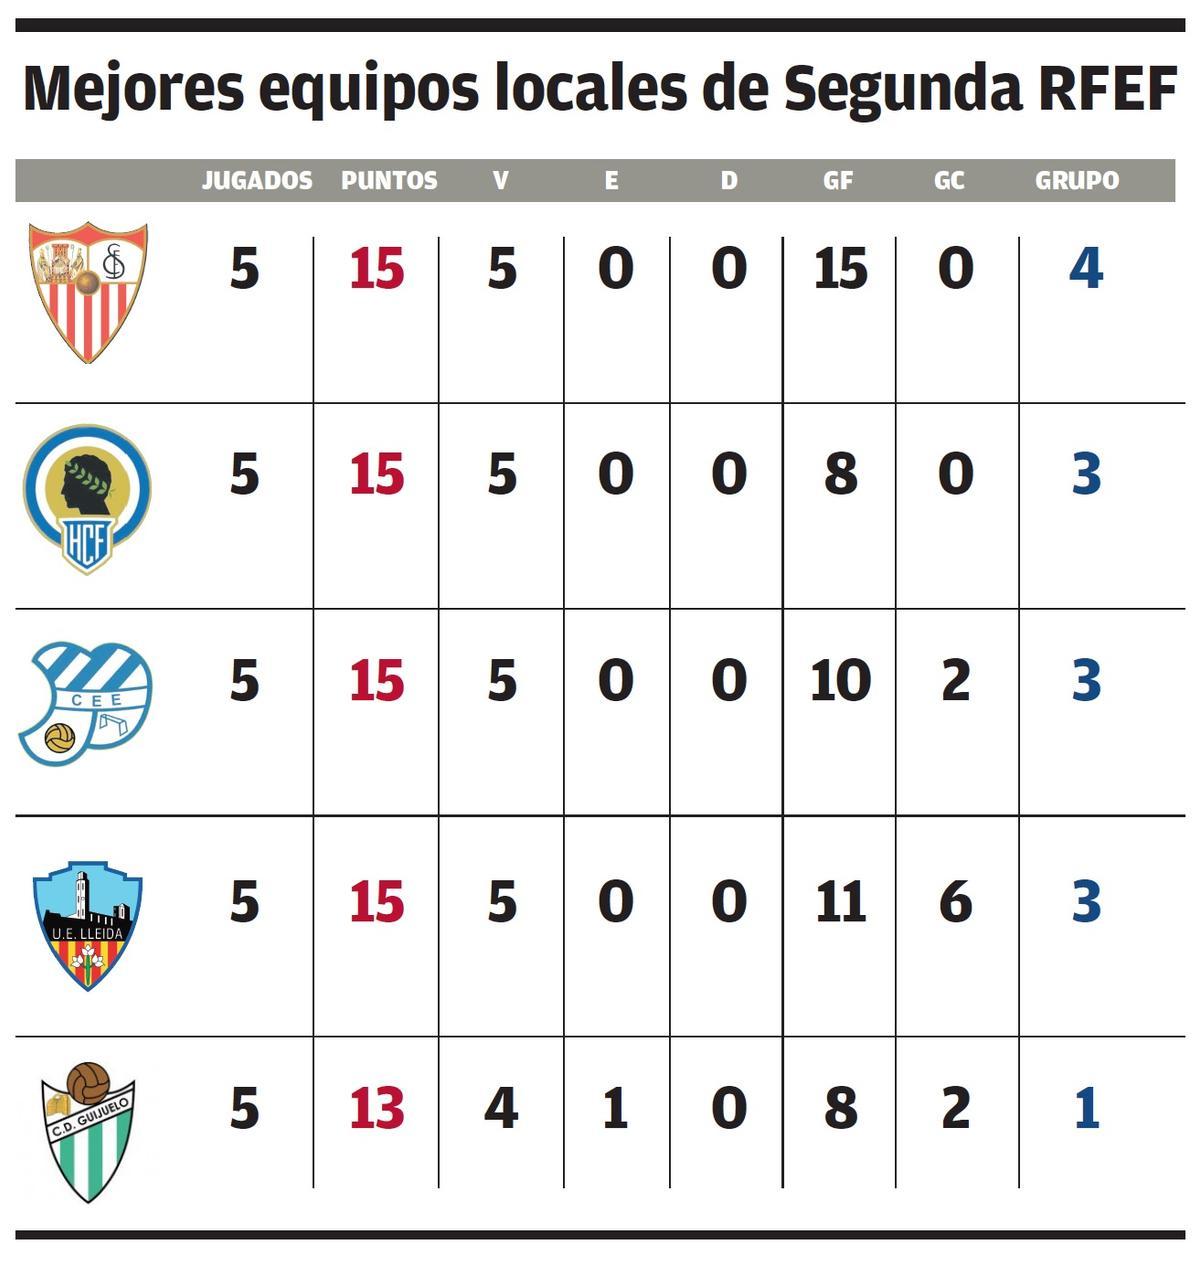 Tabla con los números de los cinco mejores equipos jugando como local esta temporada en Segunda RFEF